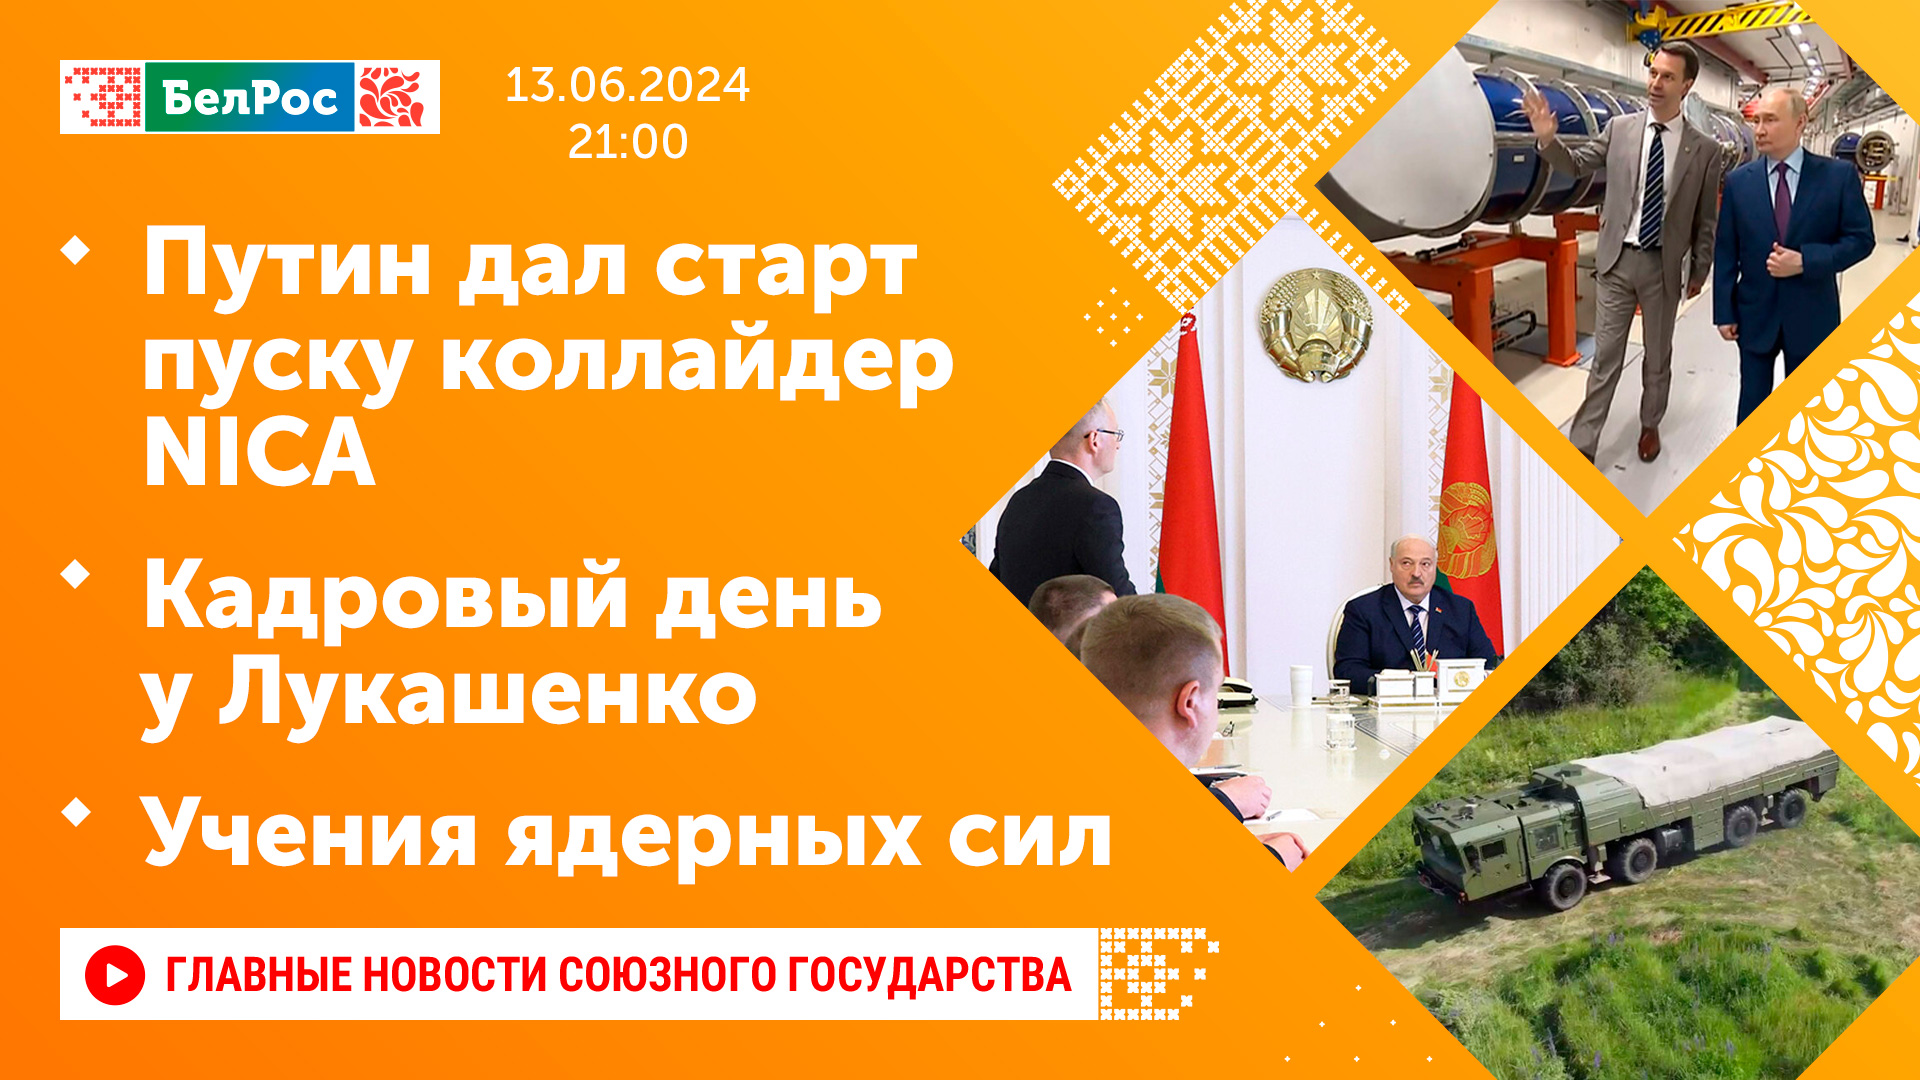 Путин дал старт пуску коллайдера NICA / Кадровый день у Лукашенко / Учения ядерных сил